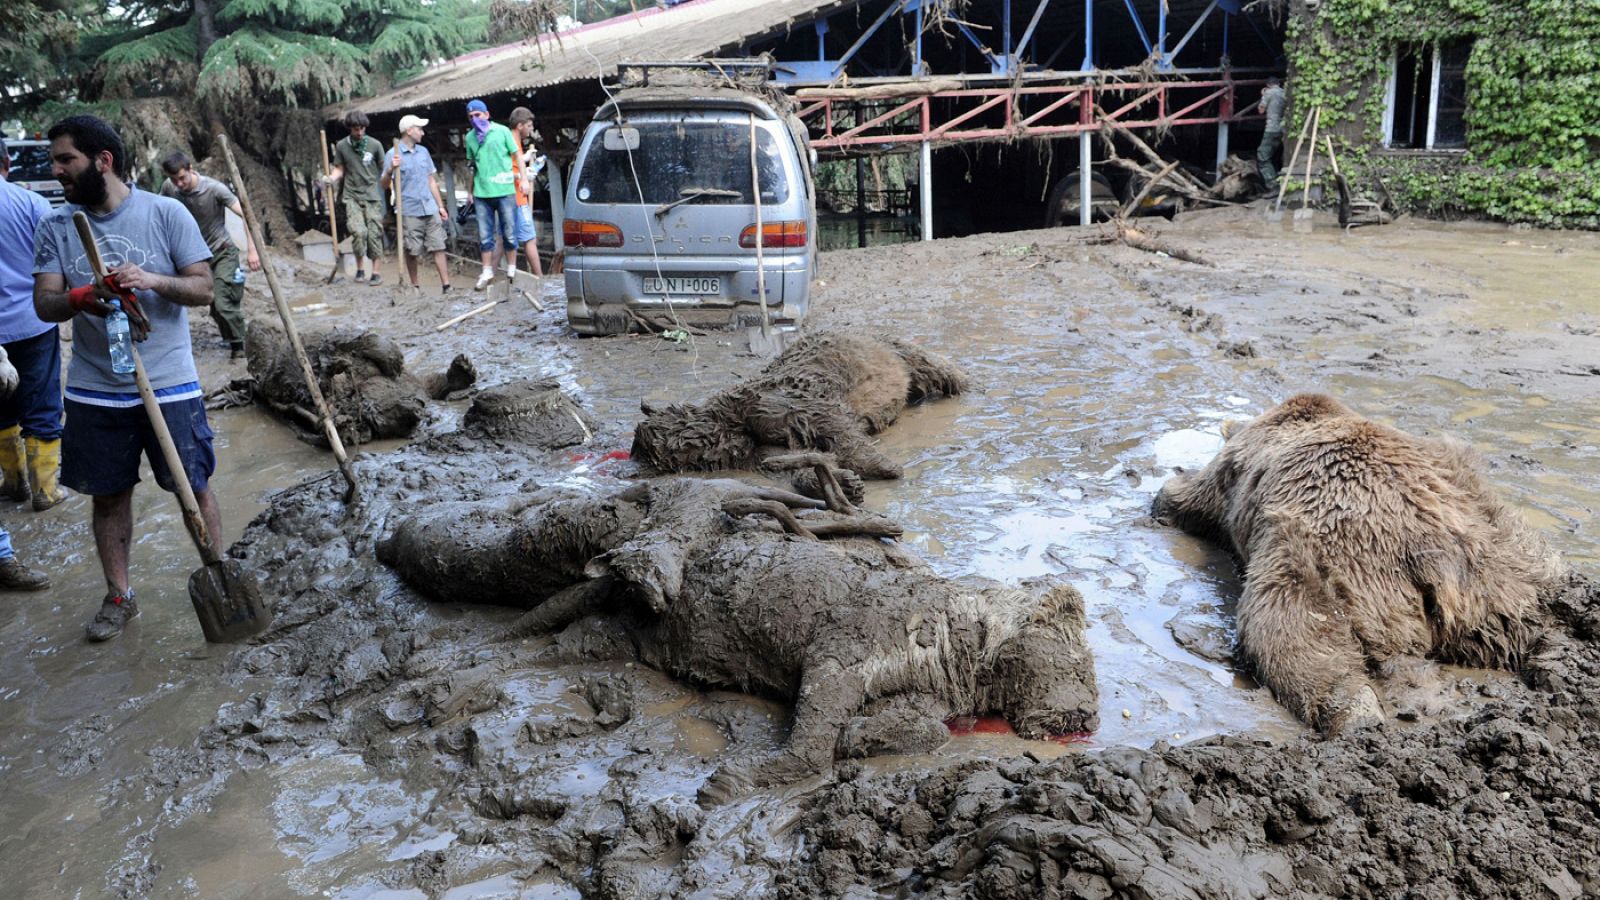 Trabajadores municipales en el zoo de Tiflis, capital de Georgia, con animales ahogados en el barro debido a las inundaciones, el 15 de junio